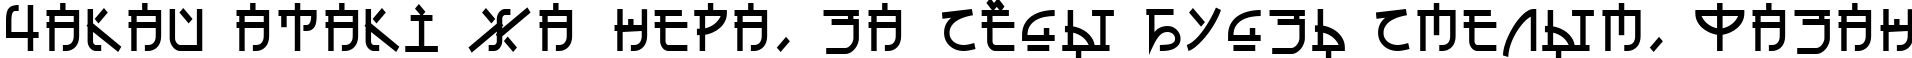 Пример написания шрифтом Eh_cyr текста на белорусском